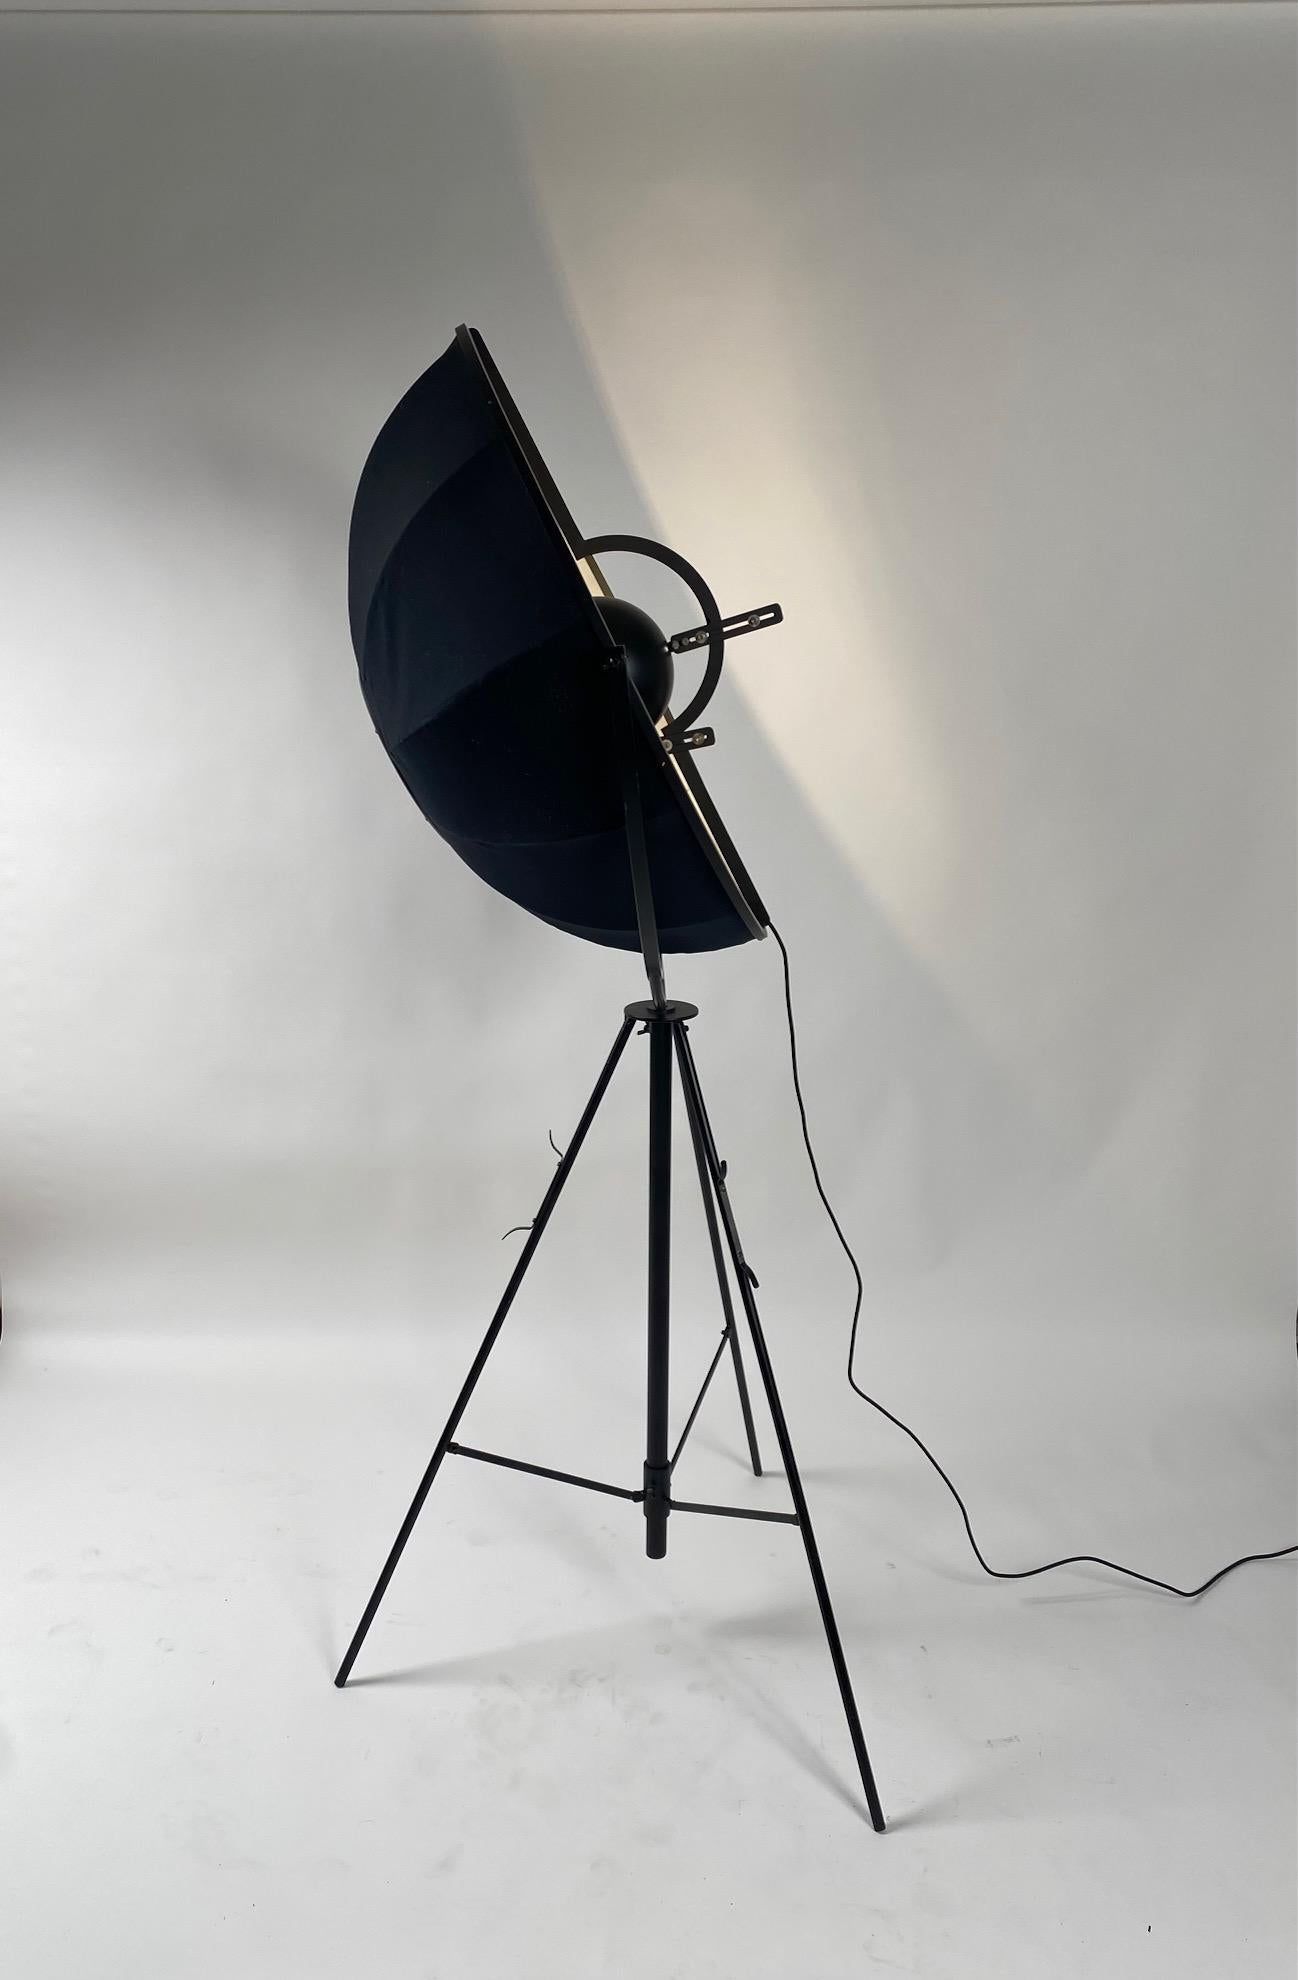 Authentique version années 80 du lampadaire iconique italien en métal et tissu conçu par Mariano Fortuny en 1907.
Le large abat-jour réglable et la base tripode diffusent une lumière indirecte confortable, tandis qu'un réflecteur intérieur dissimule